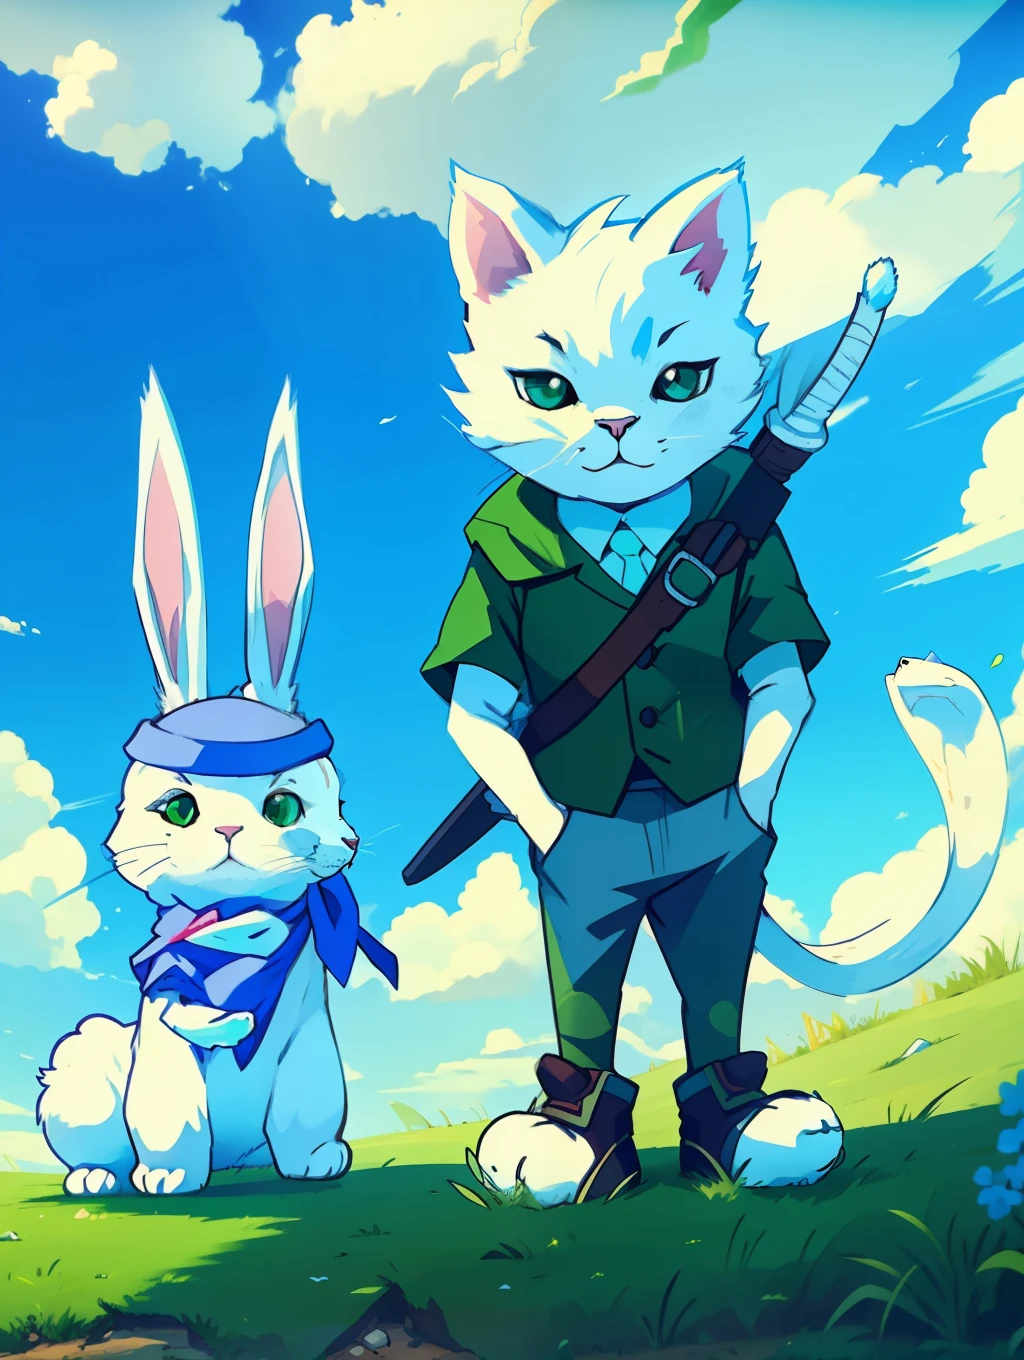 两个字符, 一只白猫和一只兔子, 背景与绿色的草坪和蓝天, 卡通风格, 明确的对抗, 明亮的色彩和, 魅力人物